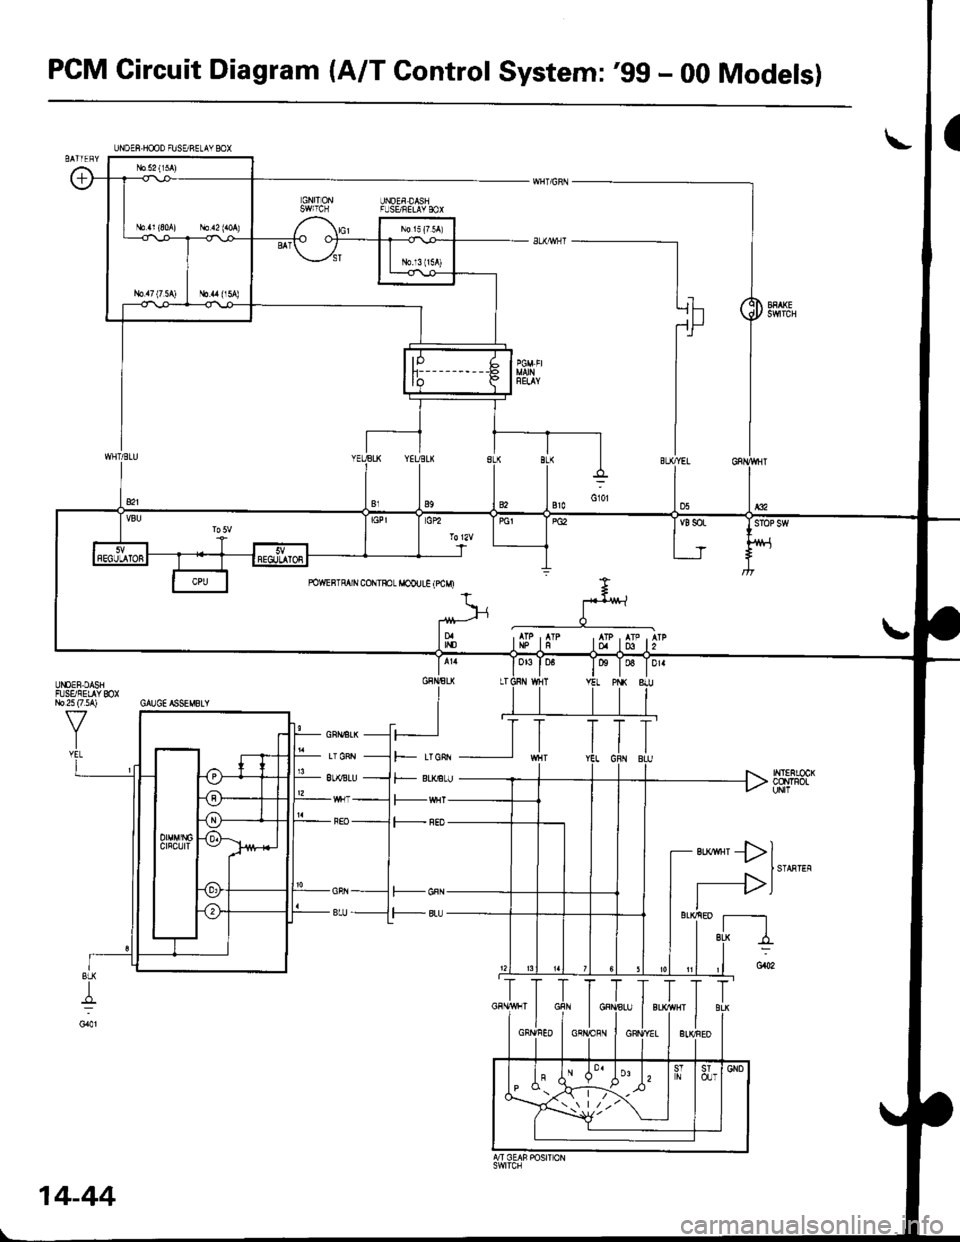 HONDA CIVIC 1997 6.G Workshop Manual PCM Gircuit Diagram (A/T Gontrol System:99 - 00 Models)
UNOEF DASIFL]SE/FELAY BOX
ta T06 T Dr.
INT€RLOCKCCNTFOLuN|l
ert*rll
I STARTEF
r-->lIl__ sL!
I
UISEF,DASHFISSIEL YmXr,Jo 25 (7 5A) GAUGE ISSEM